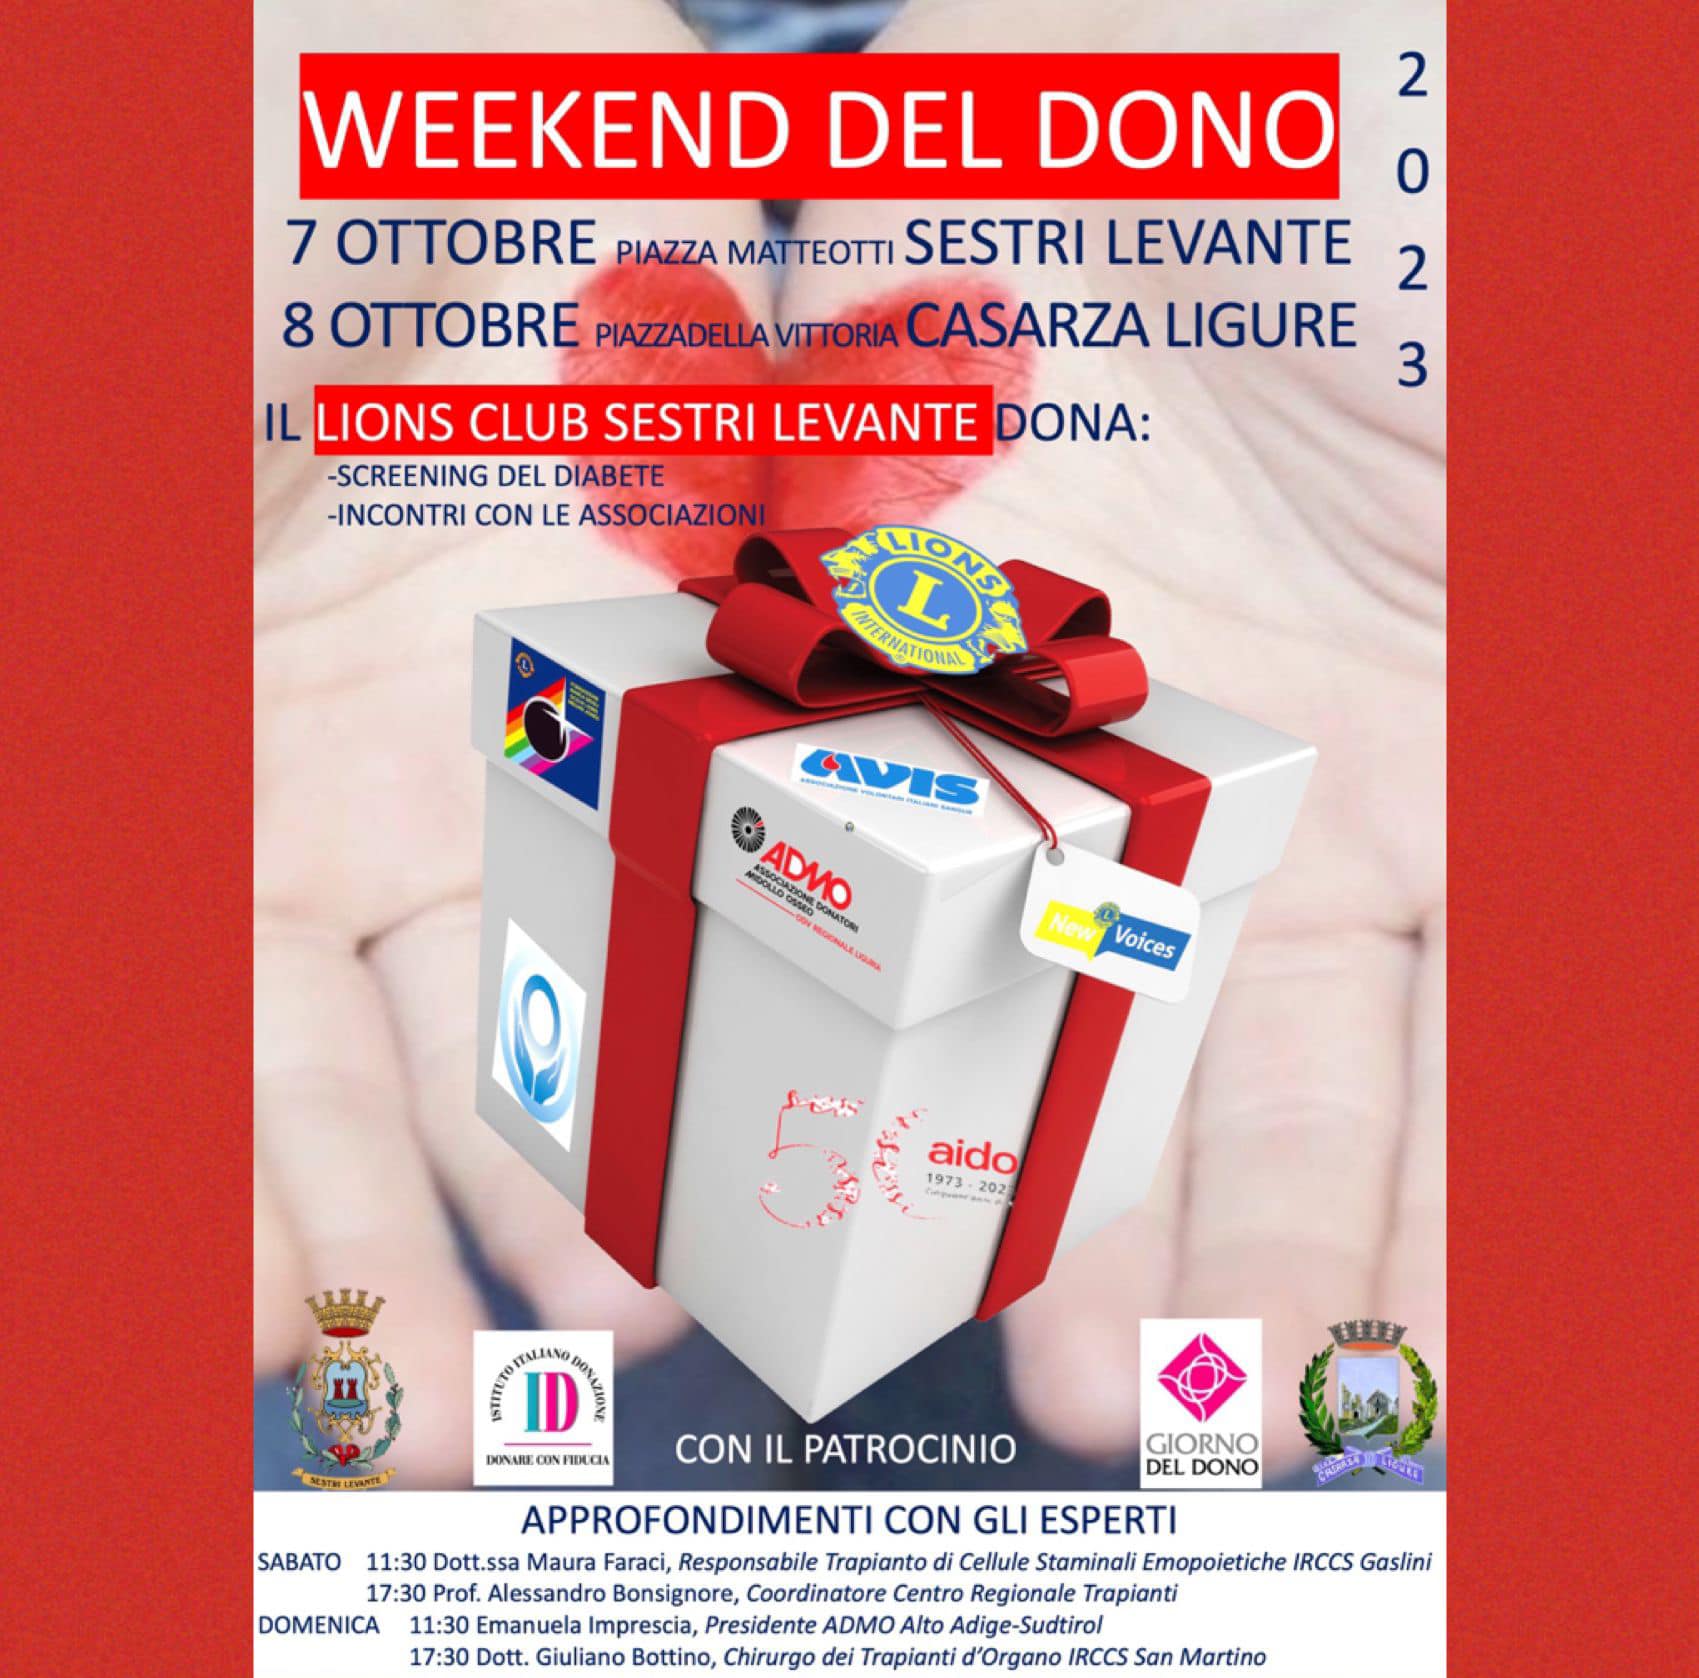 Weekend del dono - Sestri Levante 7 ottobre e Casarza Ligure 8 ottobre